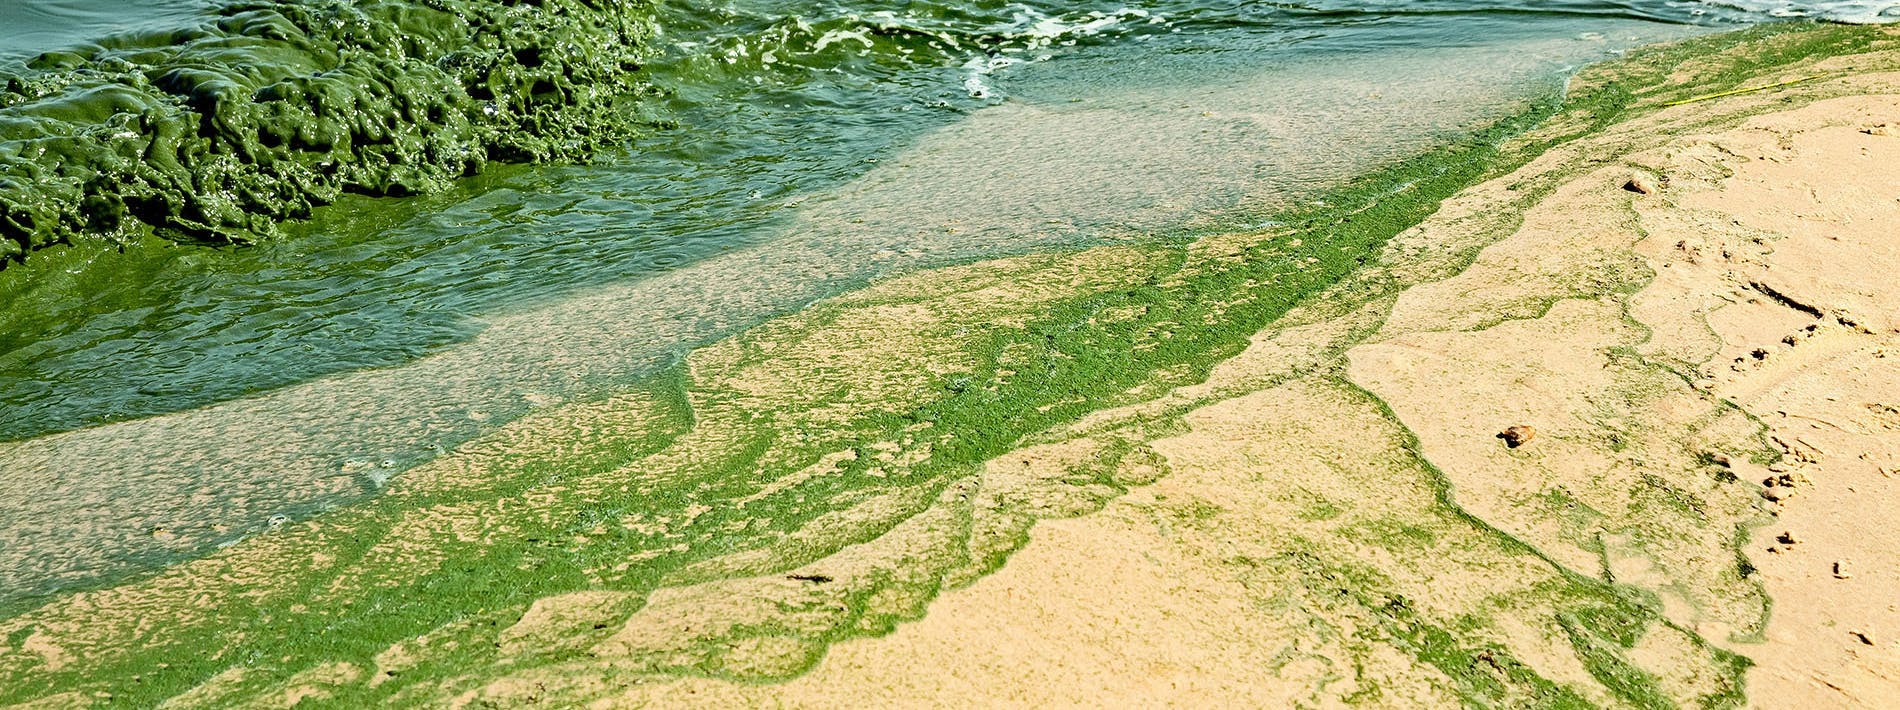 Harmful Algal Blooms Growing Seaside